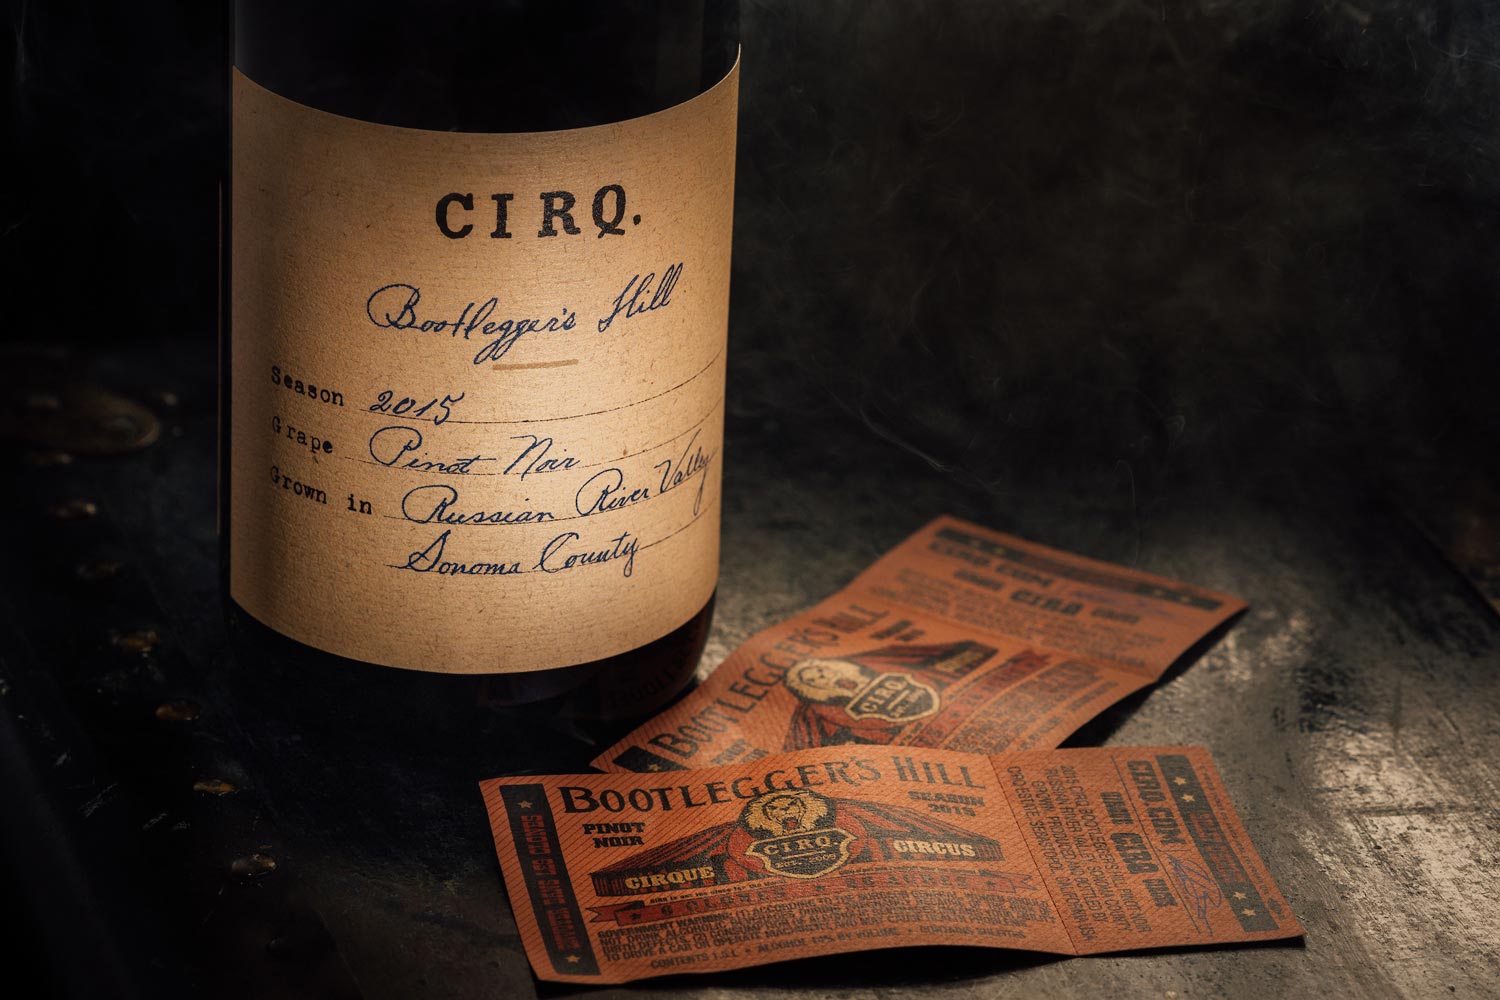 CIRQ - 2015 Bootlegger’s Hill Pinot Noir